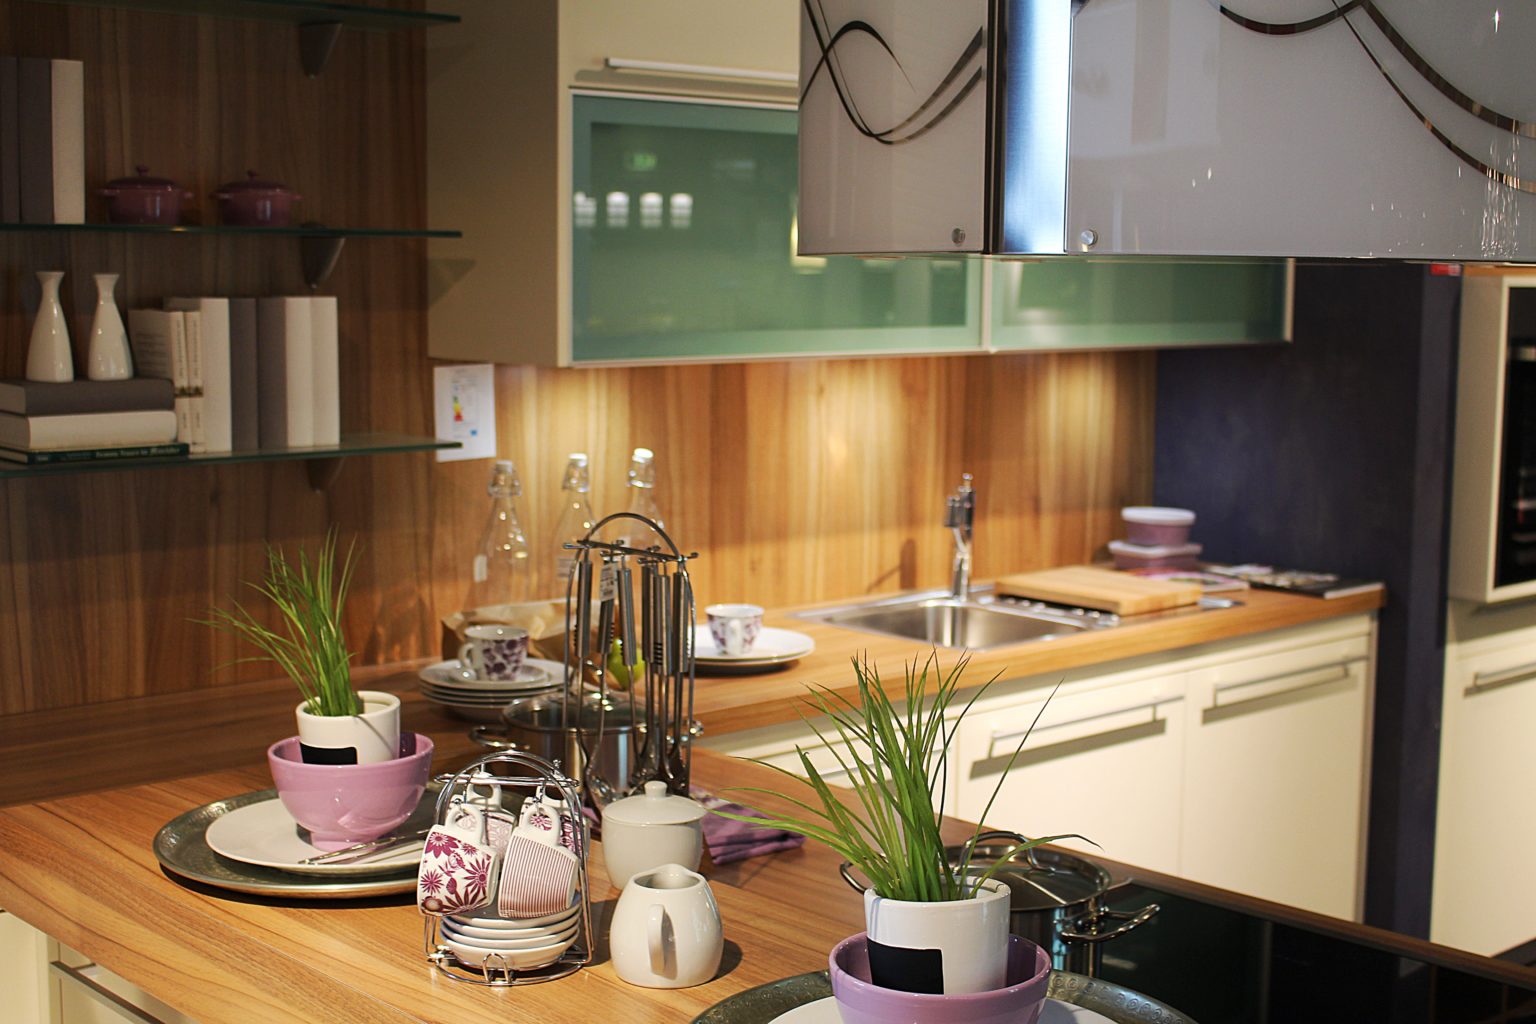 Những ý tưởng tuyệt vời tạo vẻ đẹp lãng mạn và ngọt ngào cho căn bếp với phong cách đồng quê - Ảnh 5.